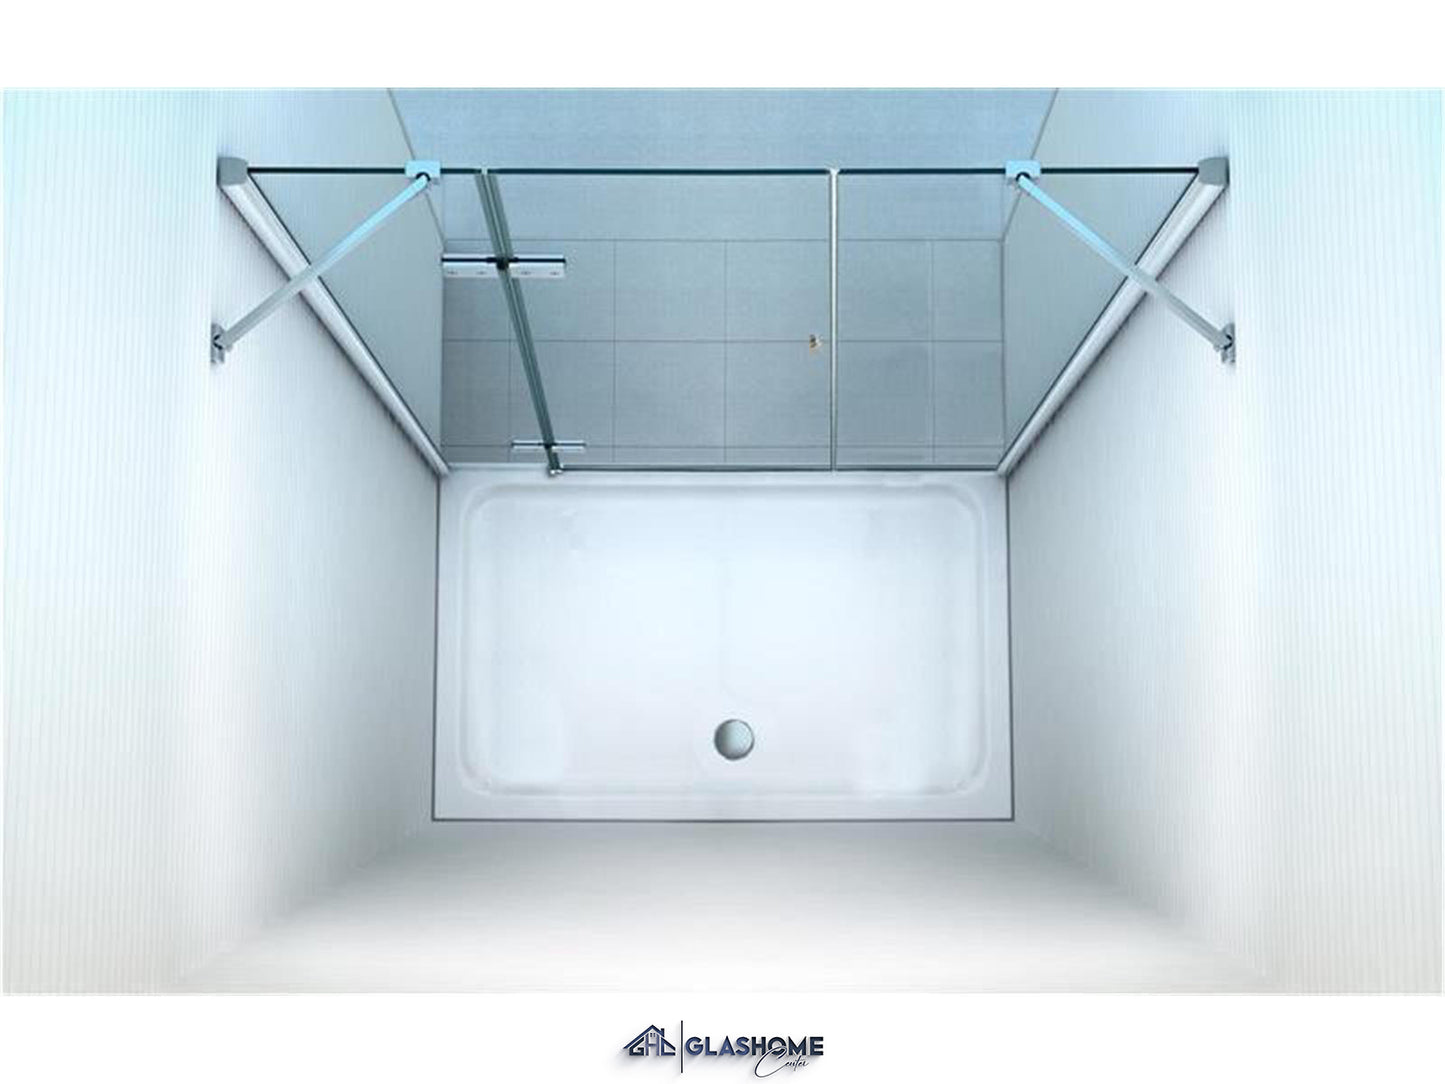 GlasHomeCenter - cabina nicho New York (205 x 195 cm) - vidrio de seguridad templado de 8 mm - sin plato de ducha